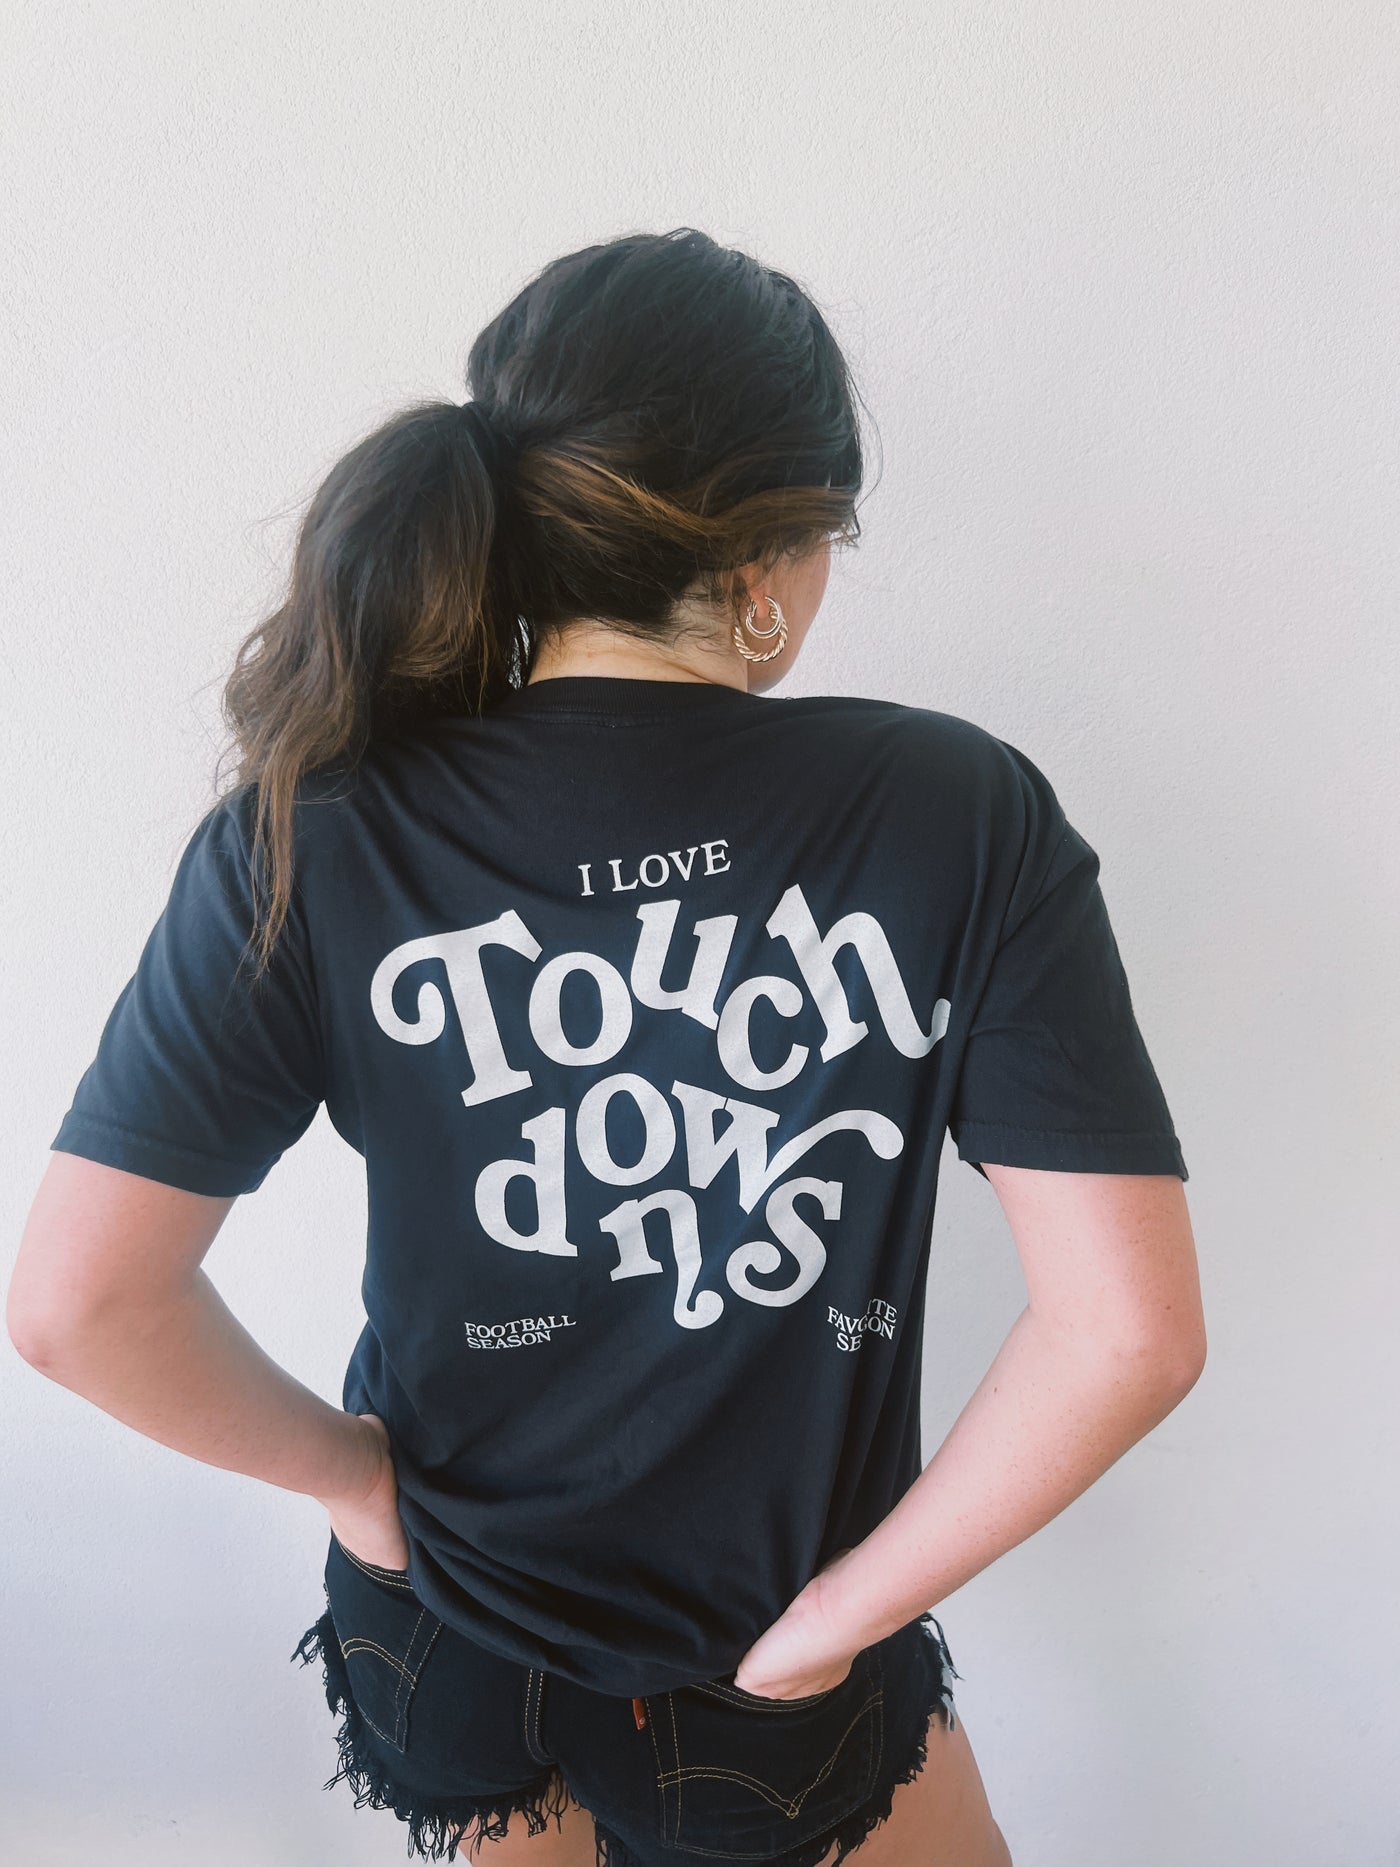 I Love Touchdowns T-shirt